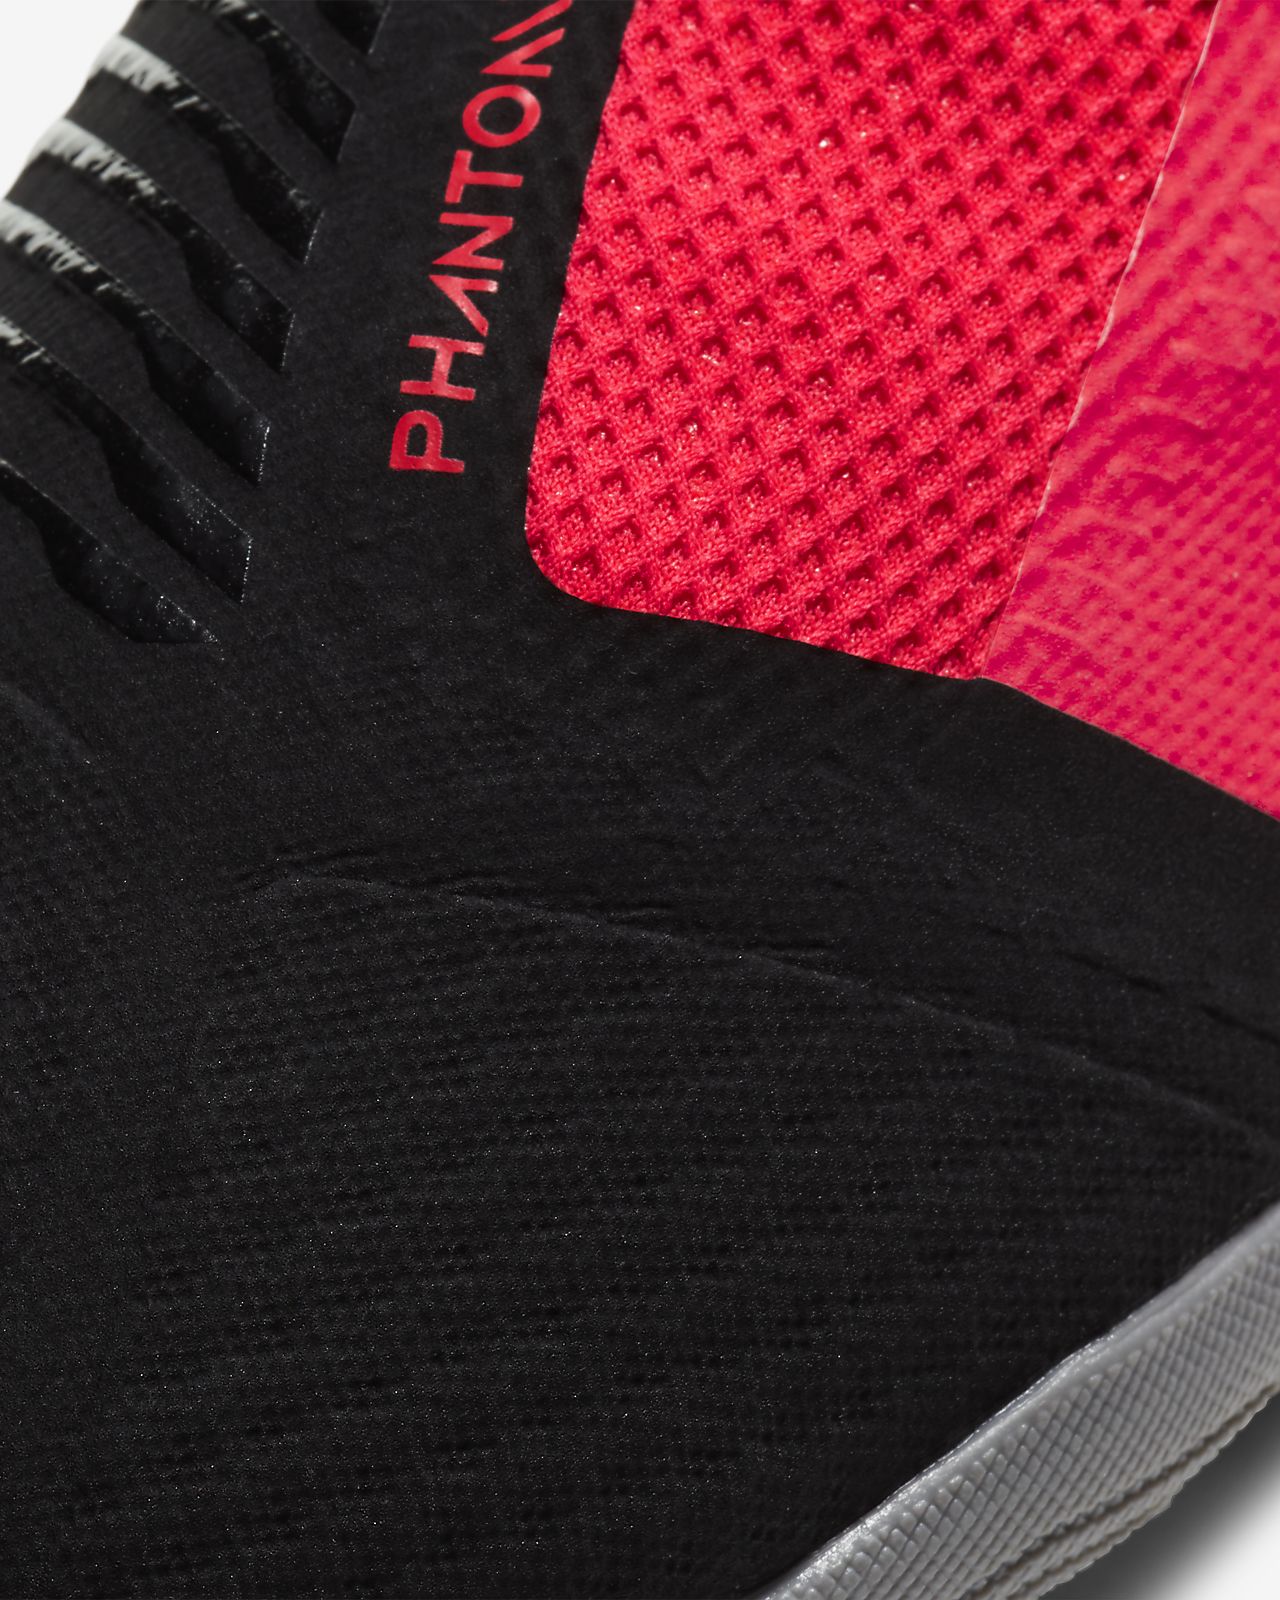 Jual Nike Phantom Venom di Palembang Harga Terbaru 2020